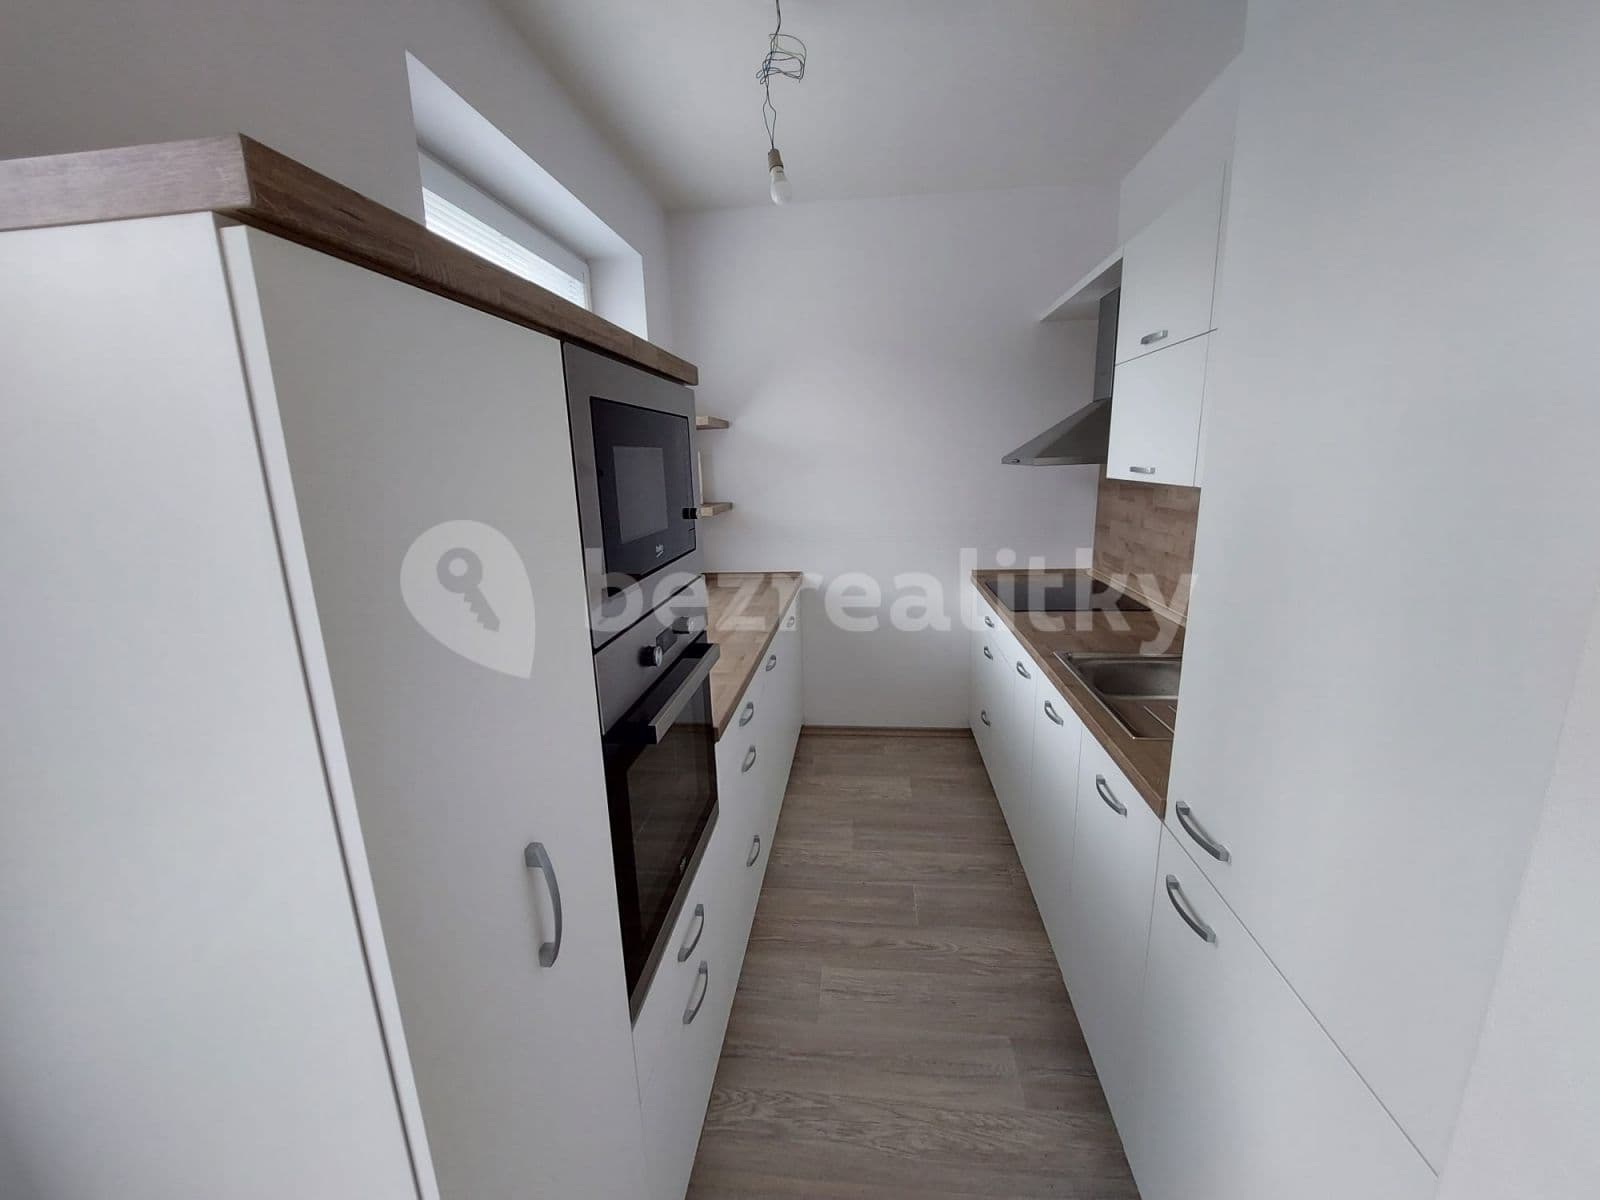 1 bedroom with open-plan kitchen flat to rent, 47 m², Rožnov pod Radhoštěm, Zlínský Region